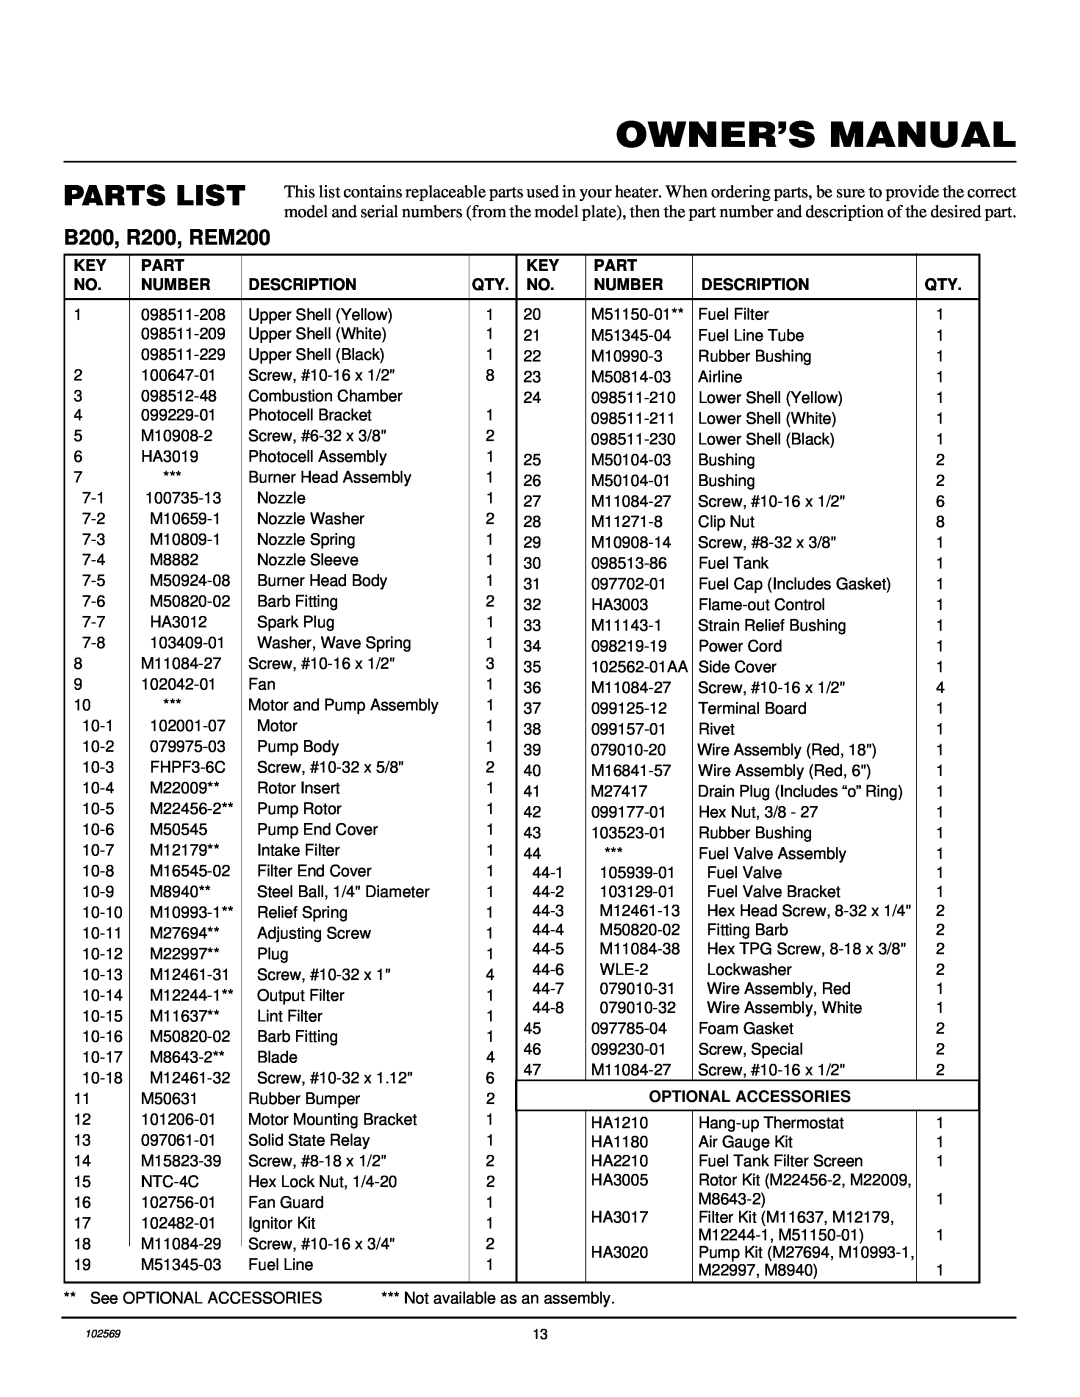 Desa owner manual Parts List, B200, R200, REM200 